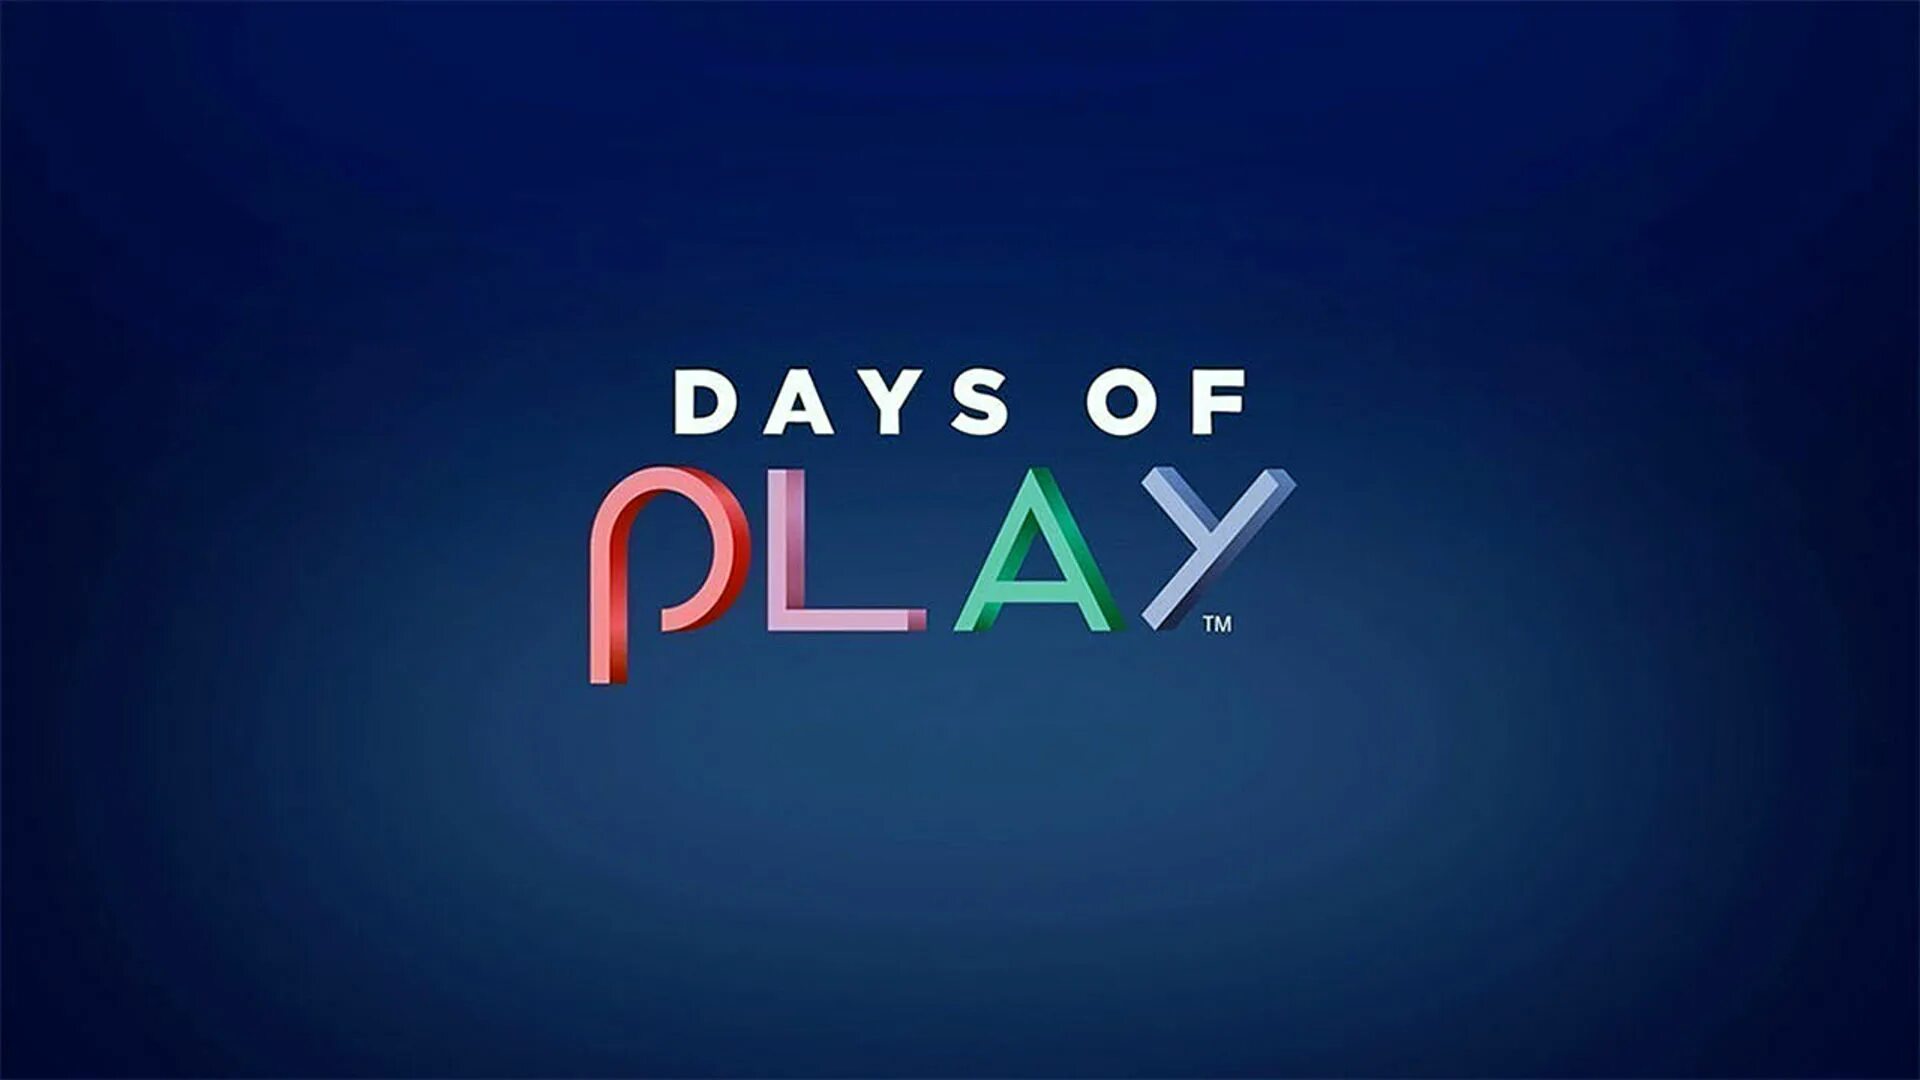 Playstation days. Время играть. Предложения плейстейшен. Плэй Дэй. State of Play Sony.